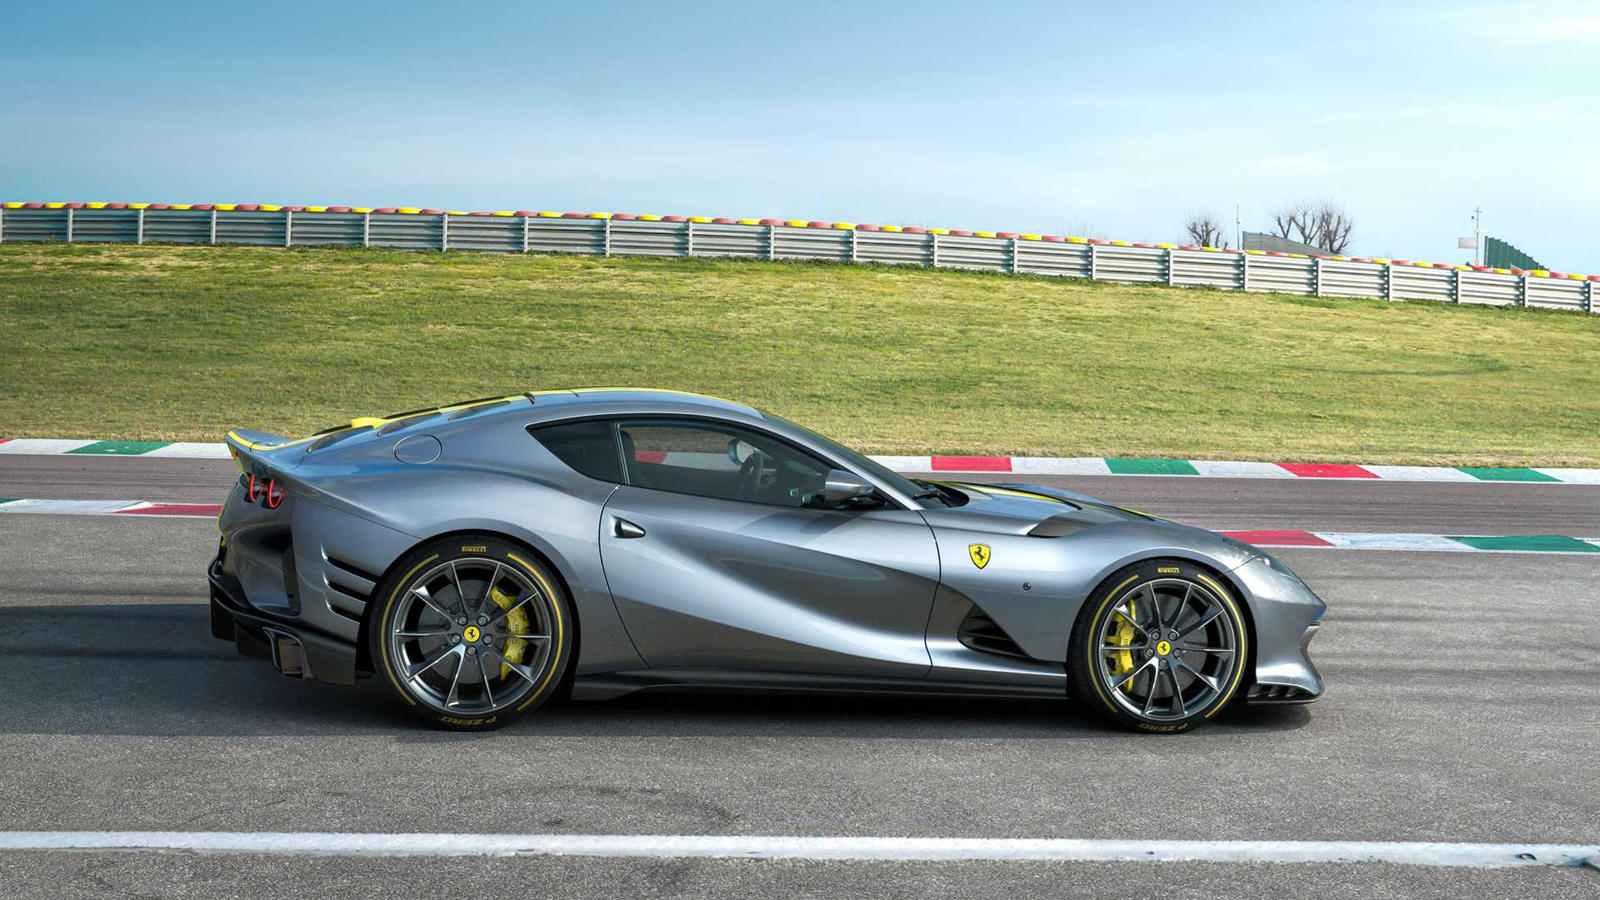 «Атмосферный V12 - это часть истории компании», - сказал он, - «и, безусловно, сердце Ferrari. Итак, то, что мы делаем, и то, что мы уже сделали с этой моделью, - это попытка найти способы сохранить это живое». Окей, значит ли это, что Ferrari следуе